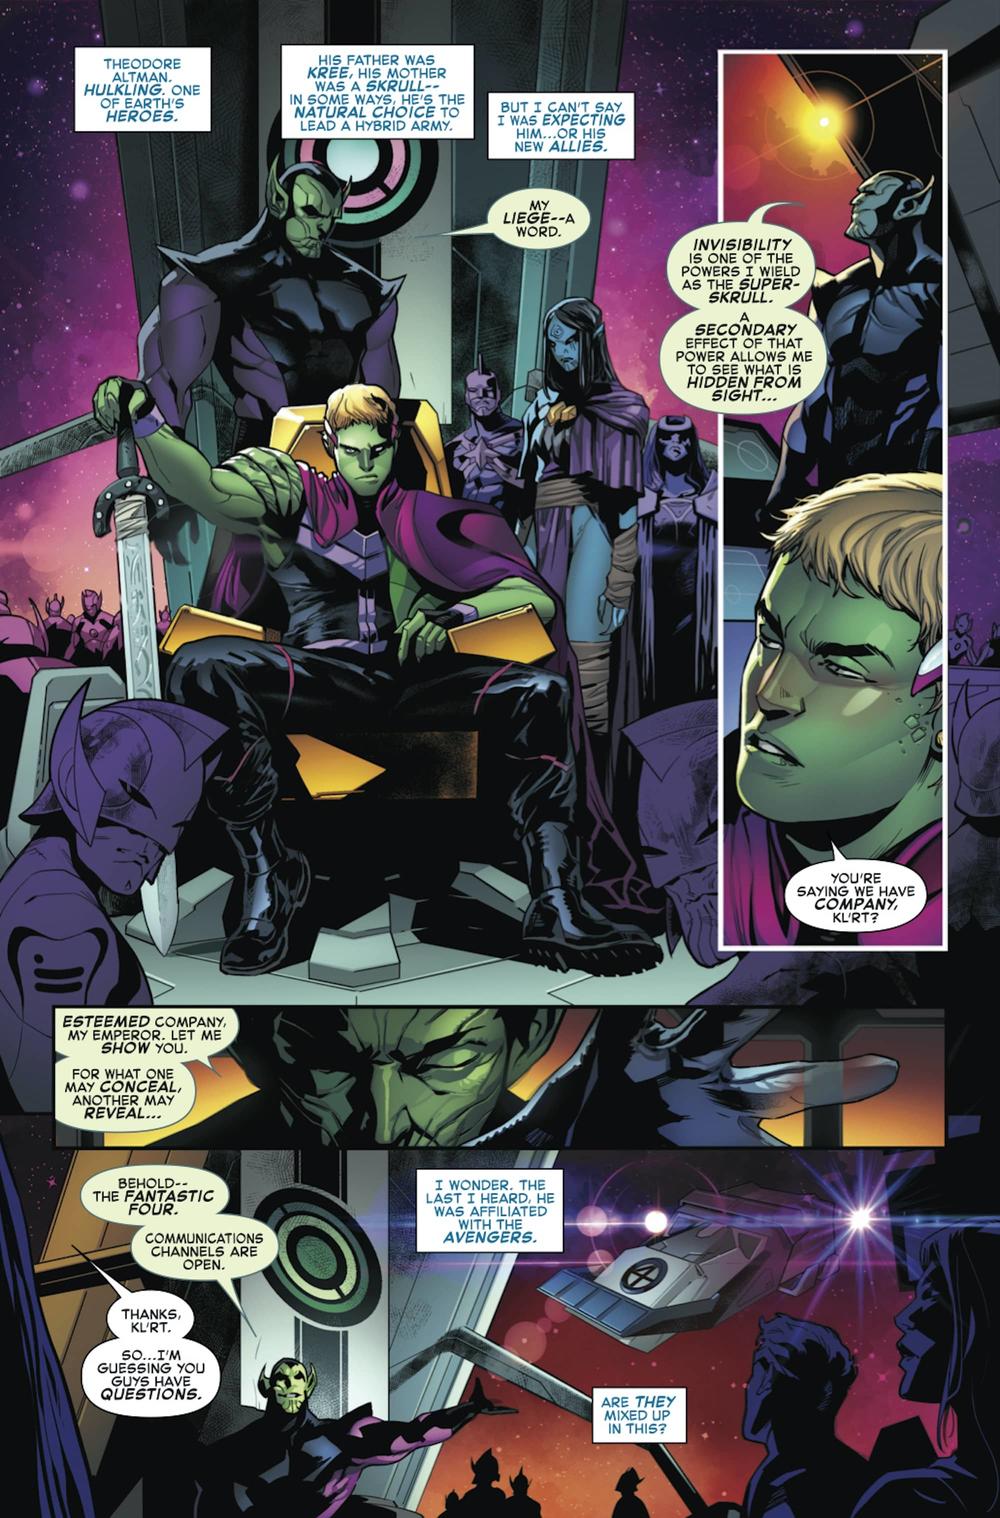 Quarteto Fantástico - Vingadores - Preview de Empyre #1 - Marvel Comics - Blog Farofeiros